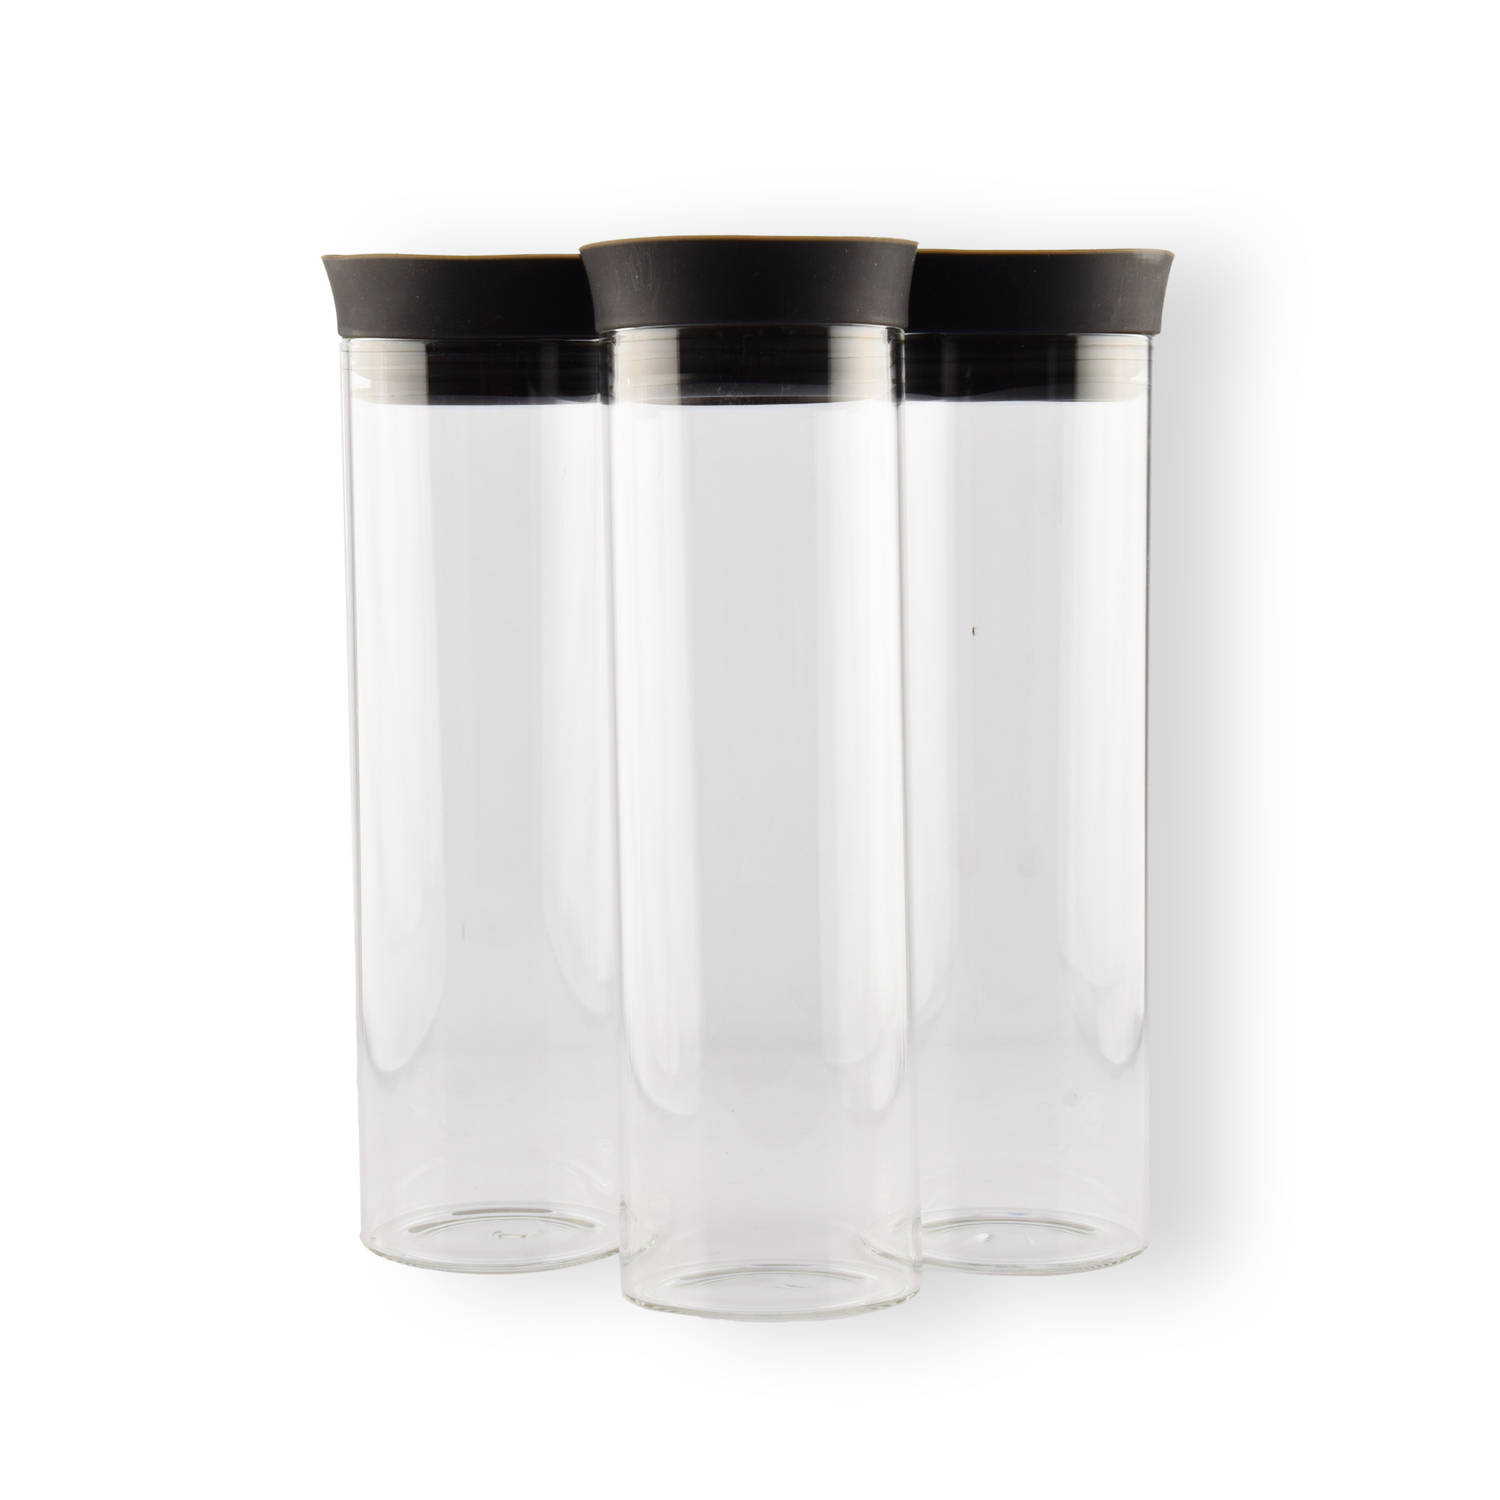 Set van 3 Glazen Waterkannen met Deksel - Transparant - 1L - 27cm x 8cm - Voor Fruitwater, Wijn en Sappen - Perfect voor Koken & Tafelen, Kerst en Wonen